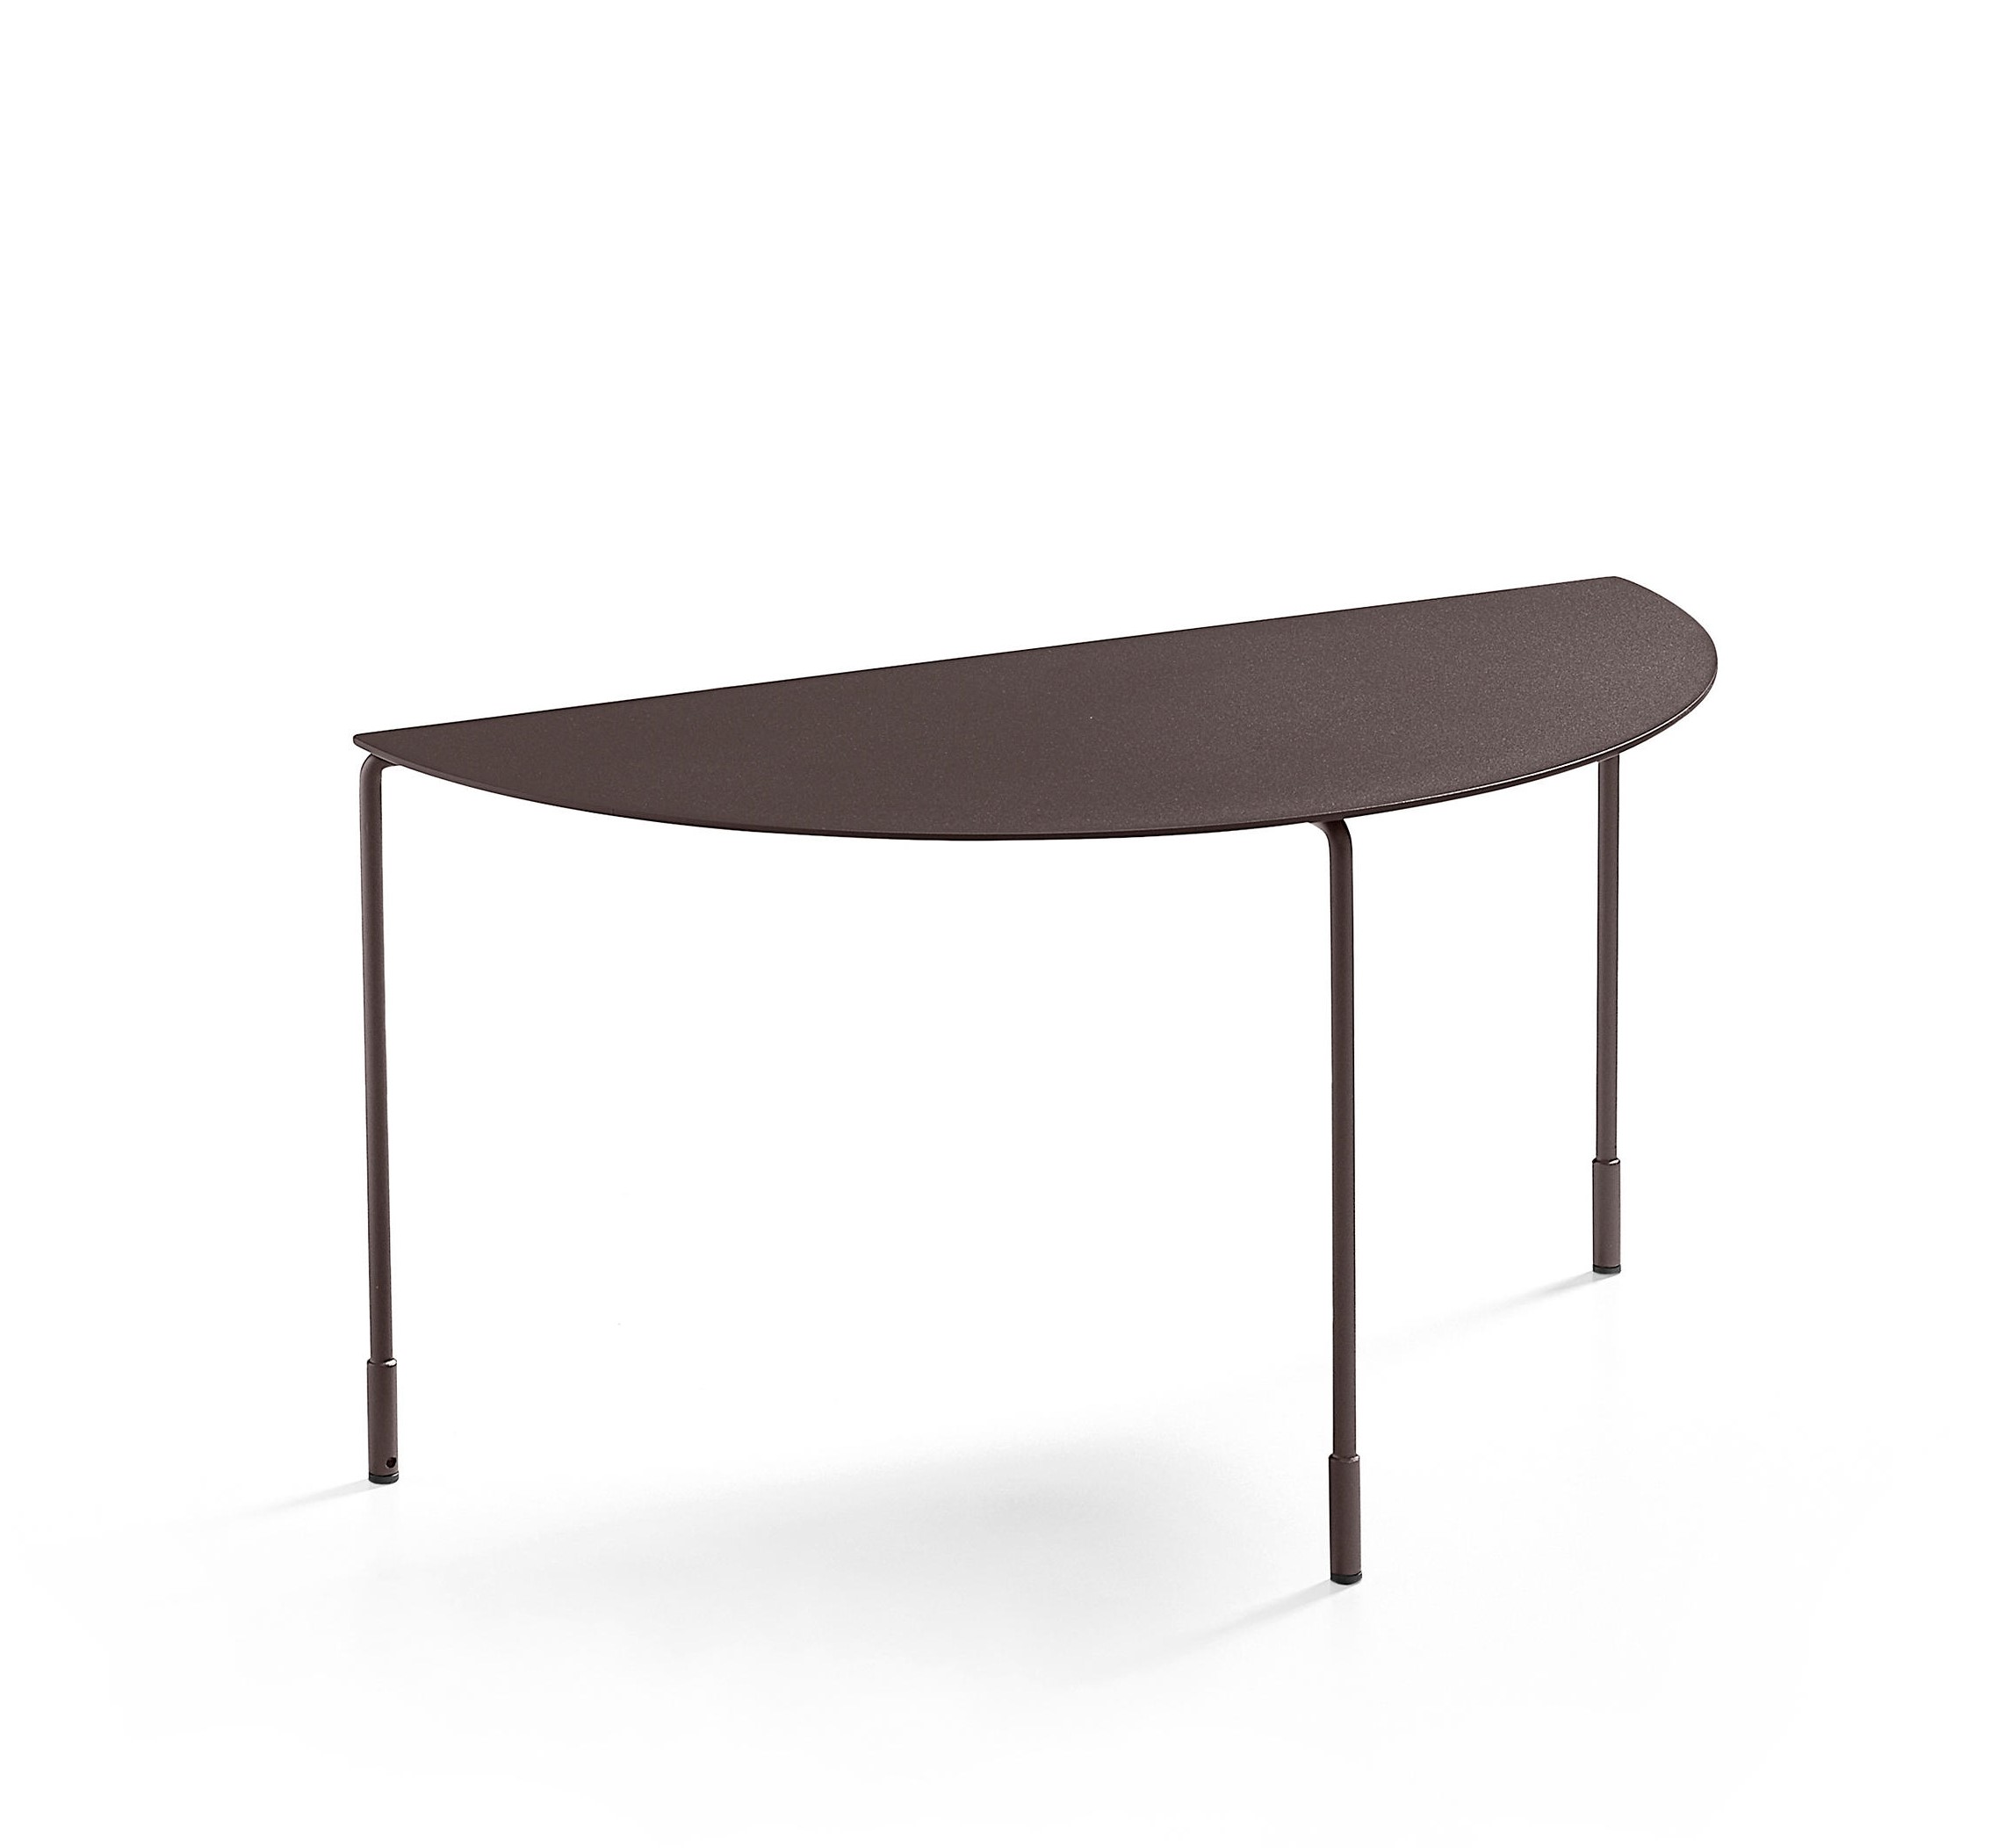 MIDJ - Konferenční stolek HOODI kožená deska, výška 36 cm